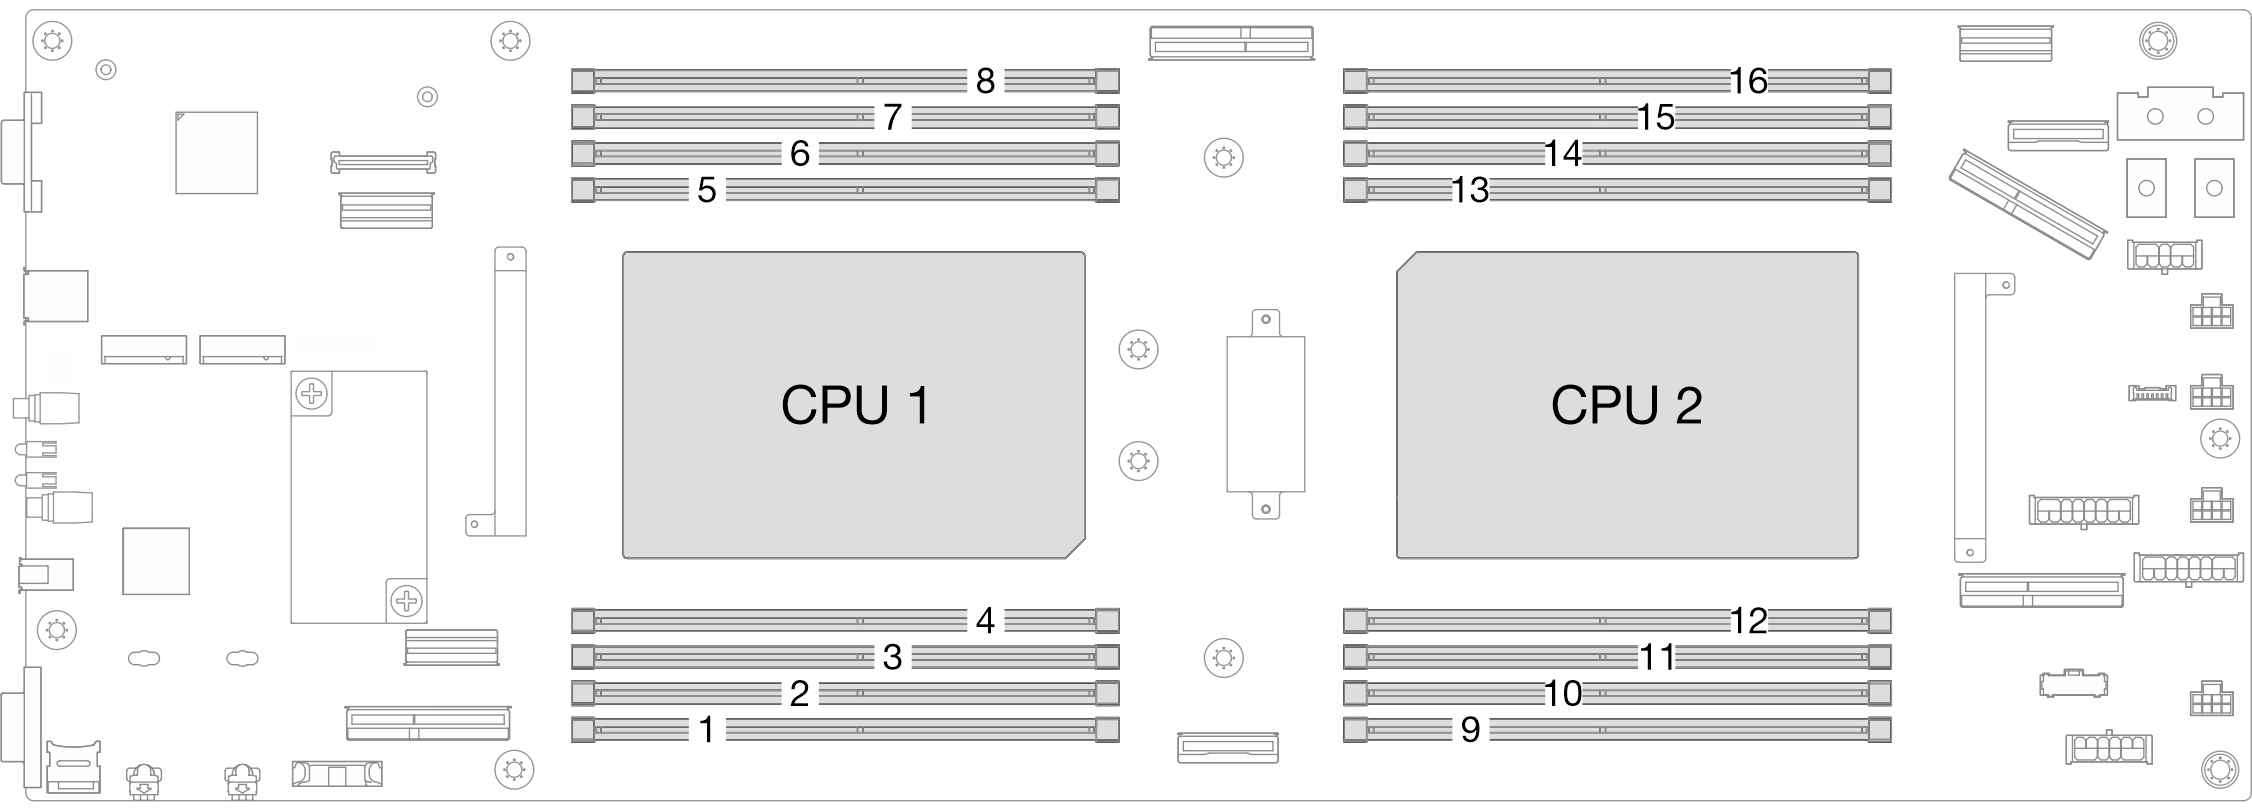 Memory module and processor location